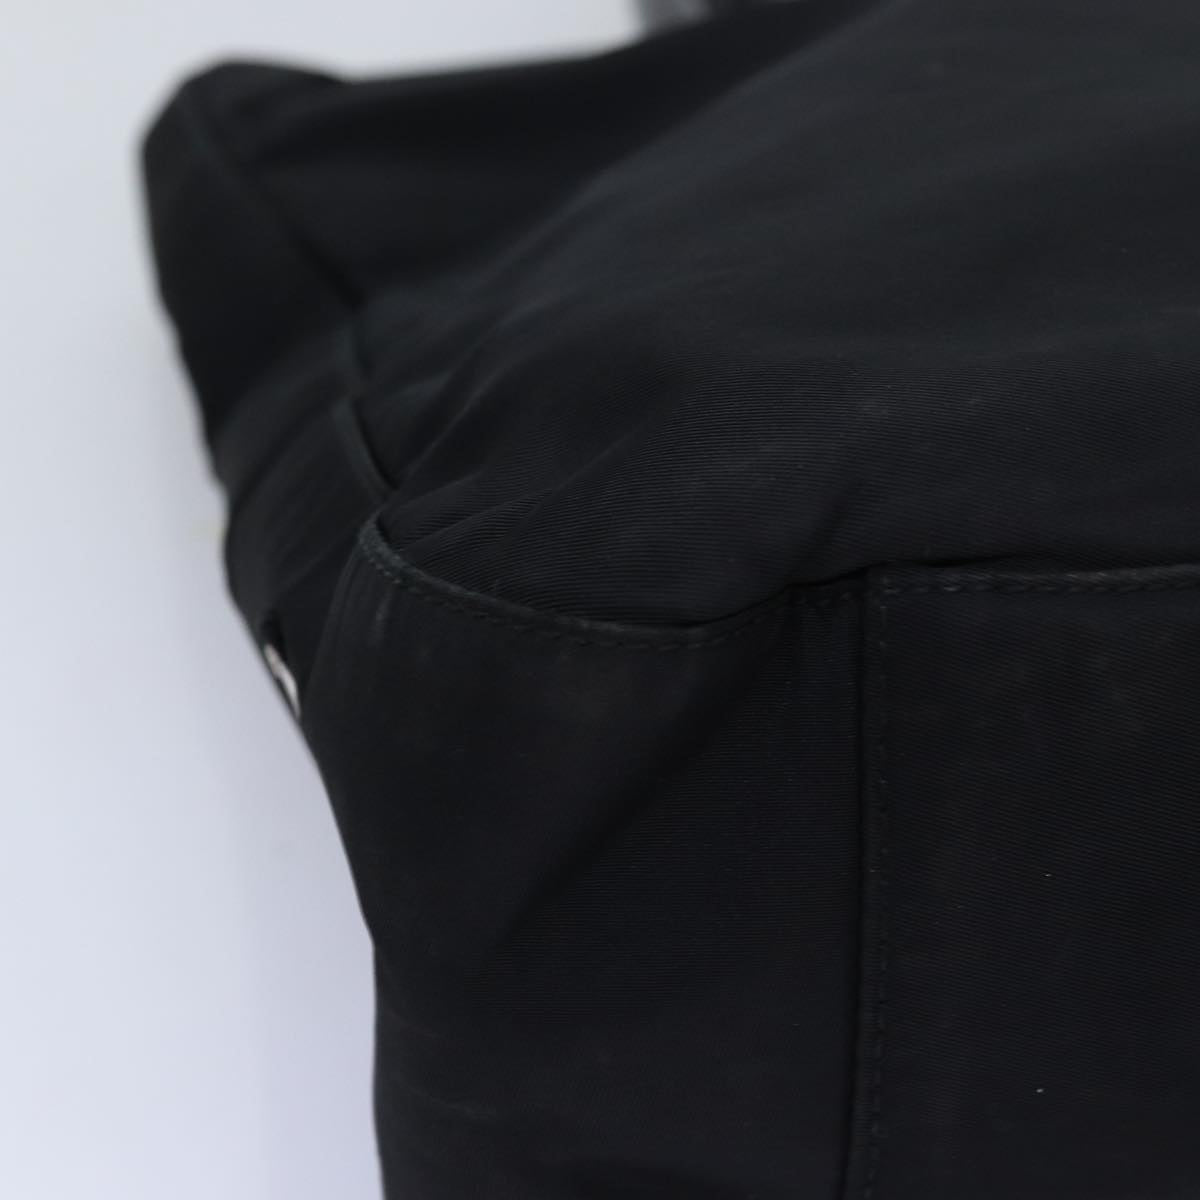 PRADA Hand Bag Nylon Black Auth ar11765B